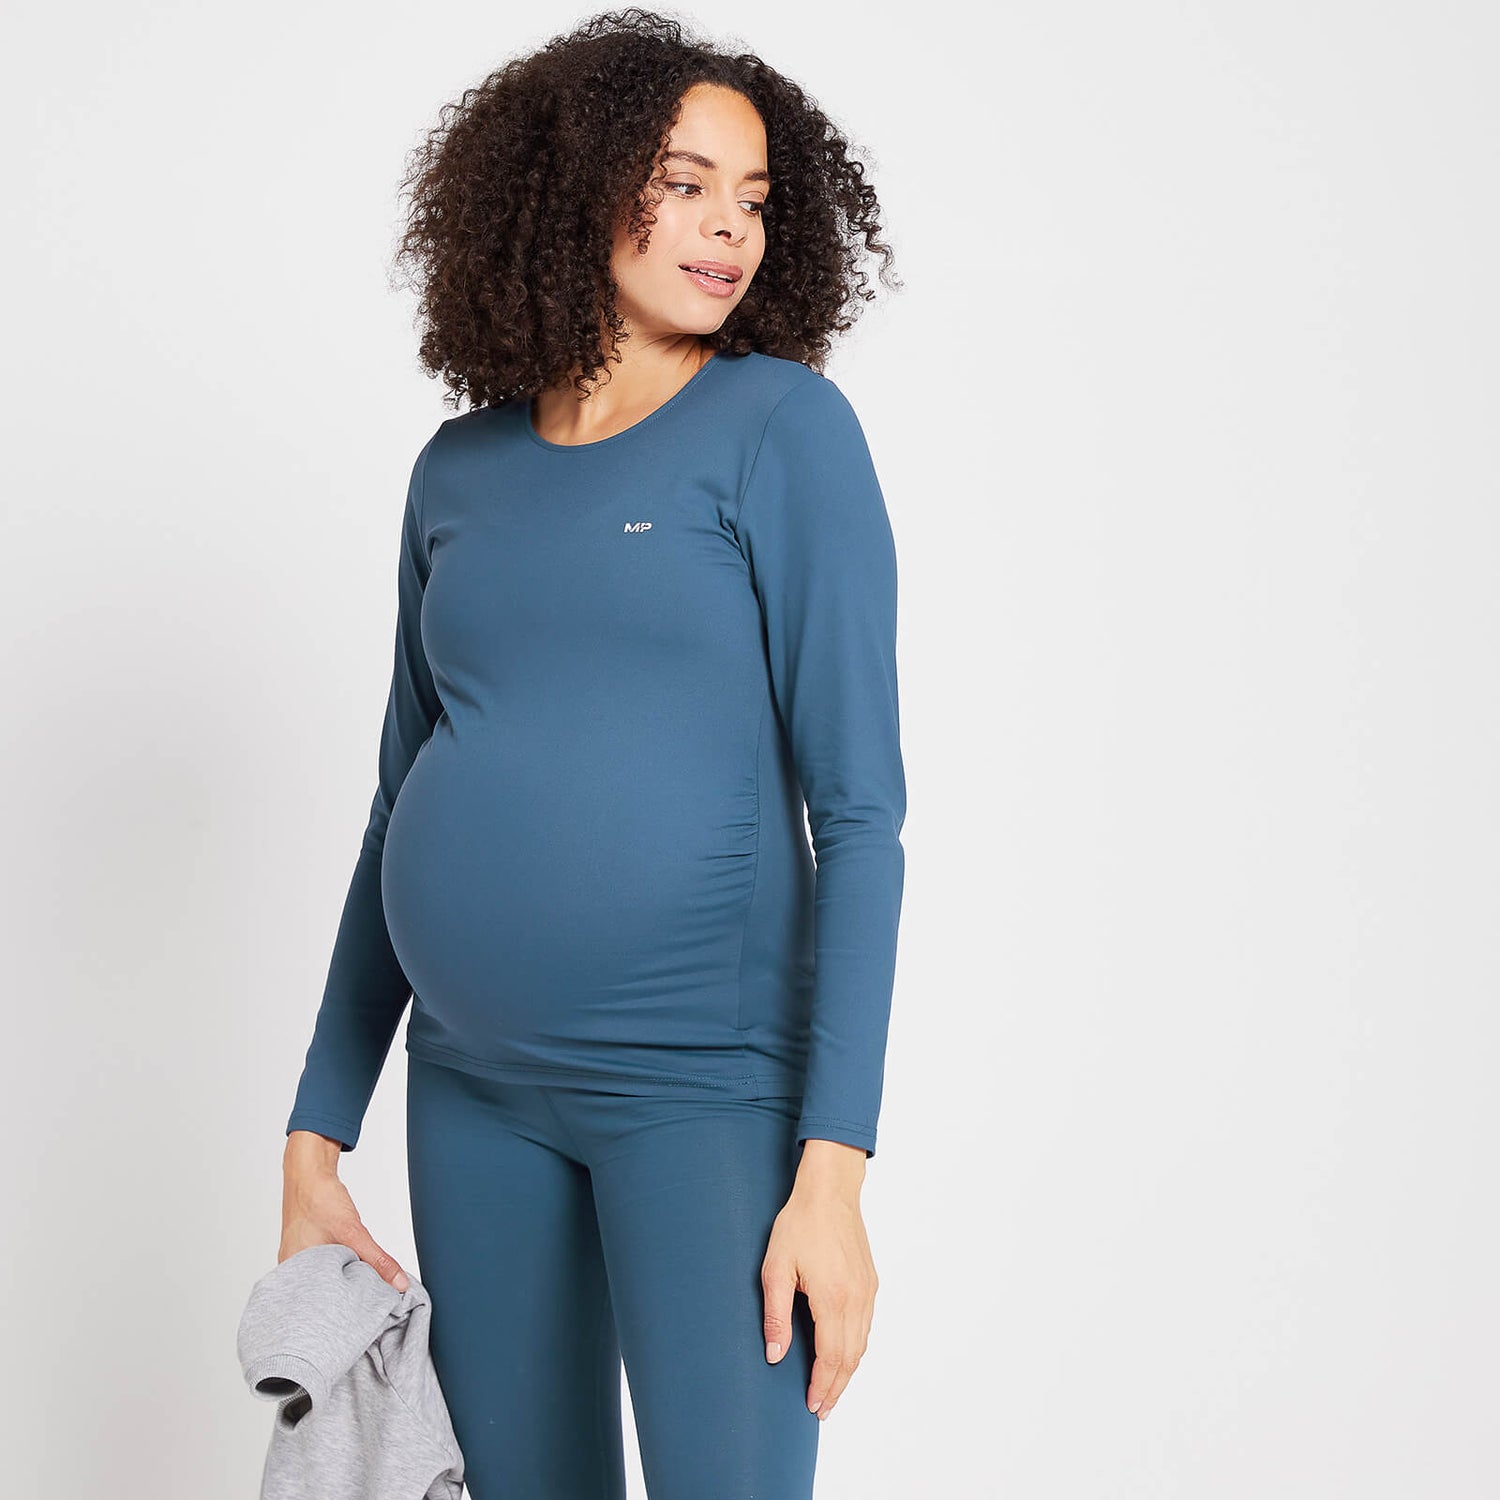 Γυναικείο Μακρυμάνικο Τοπ MP Power Εγκυμοσύνης - Dust Blue - XS